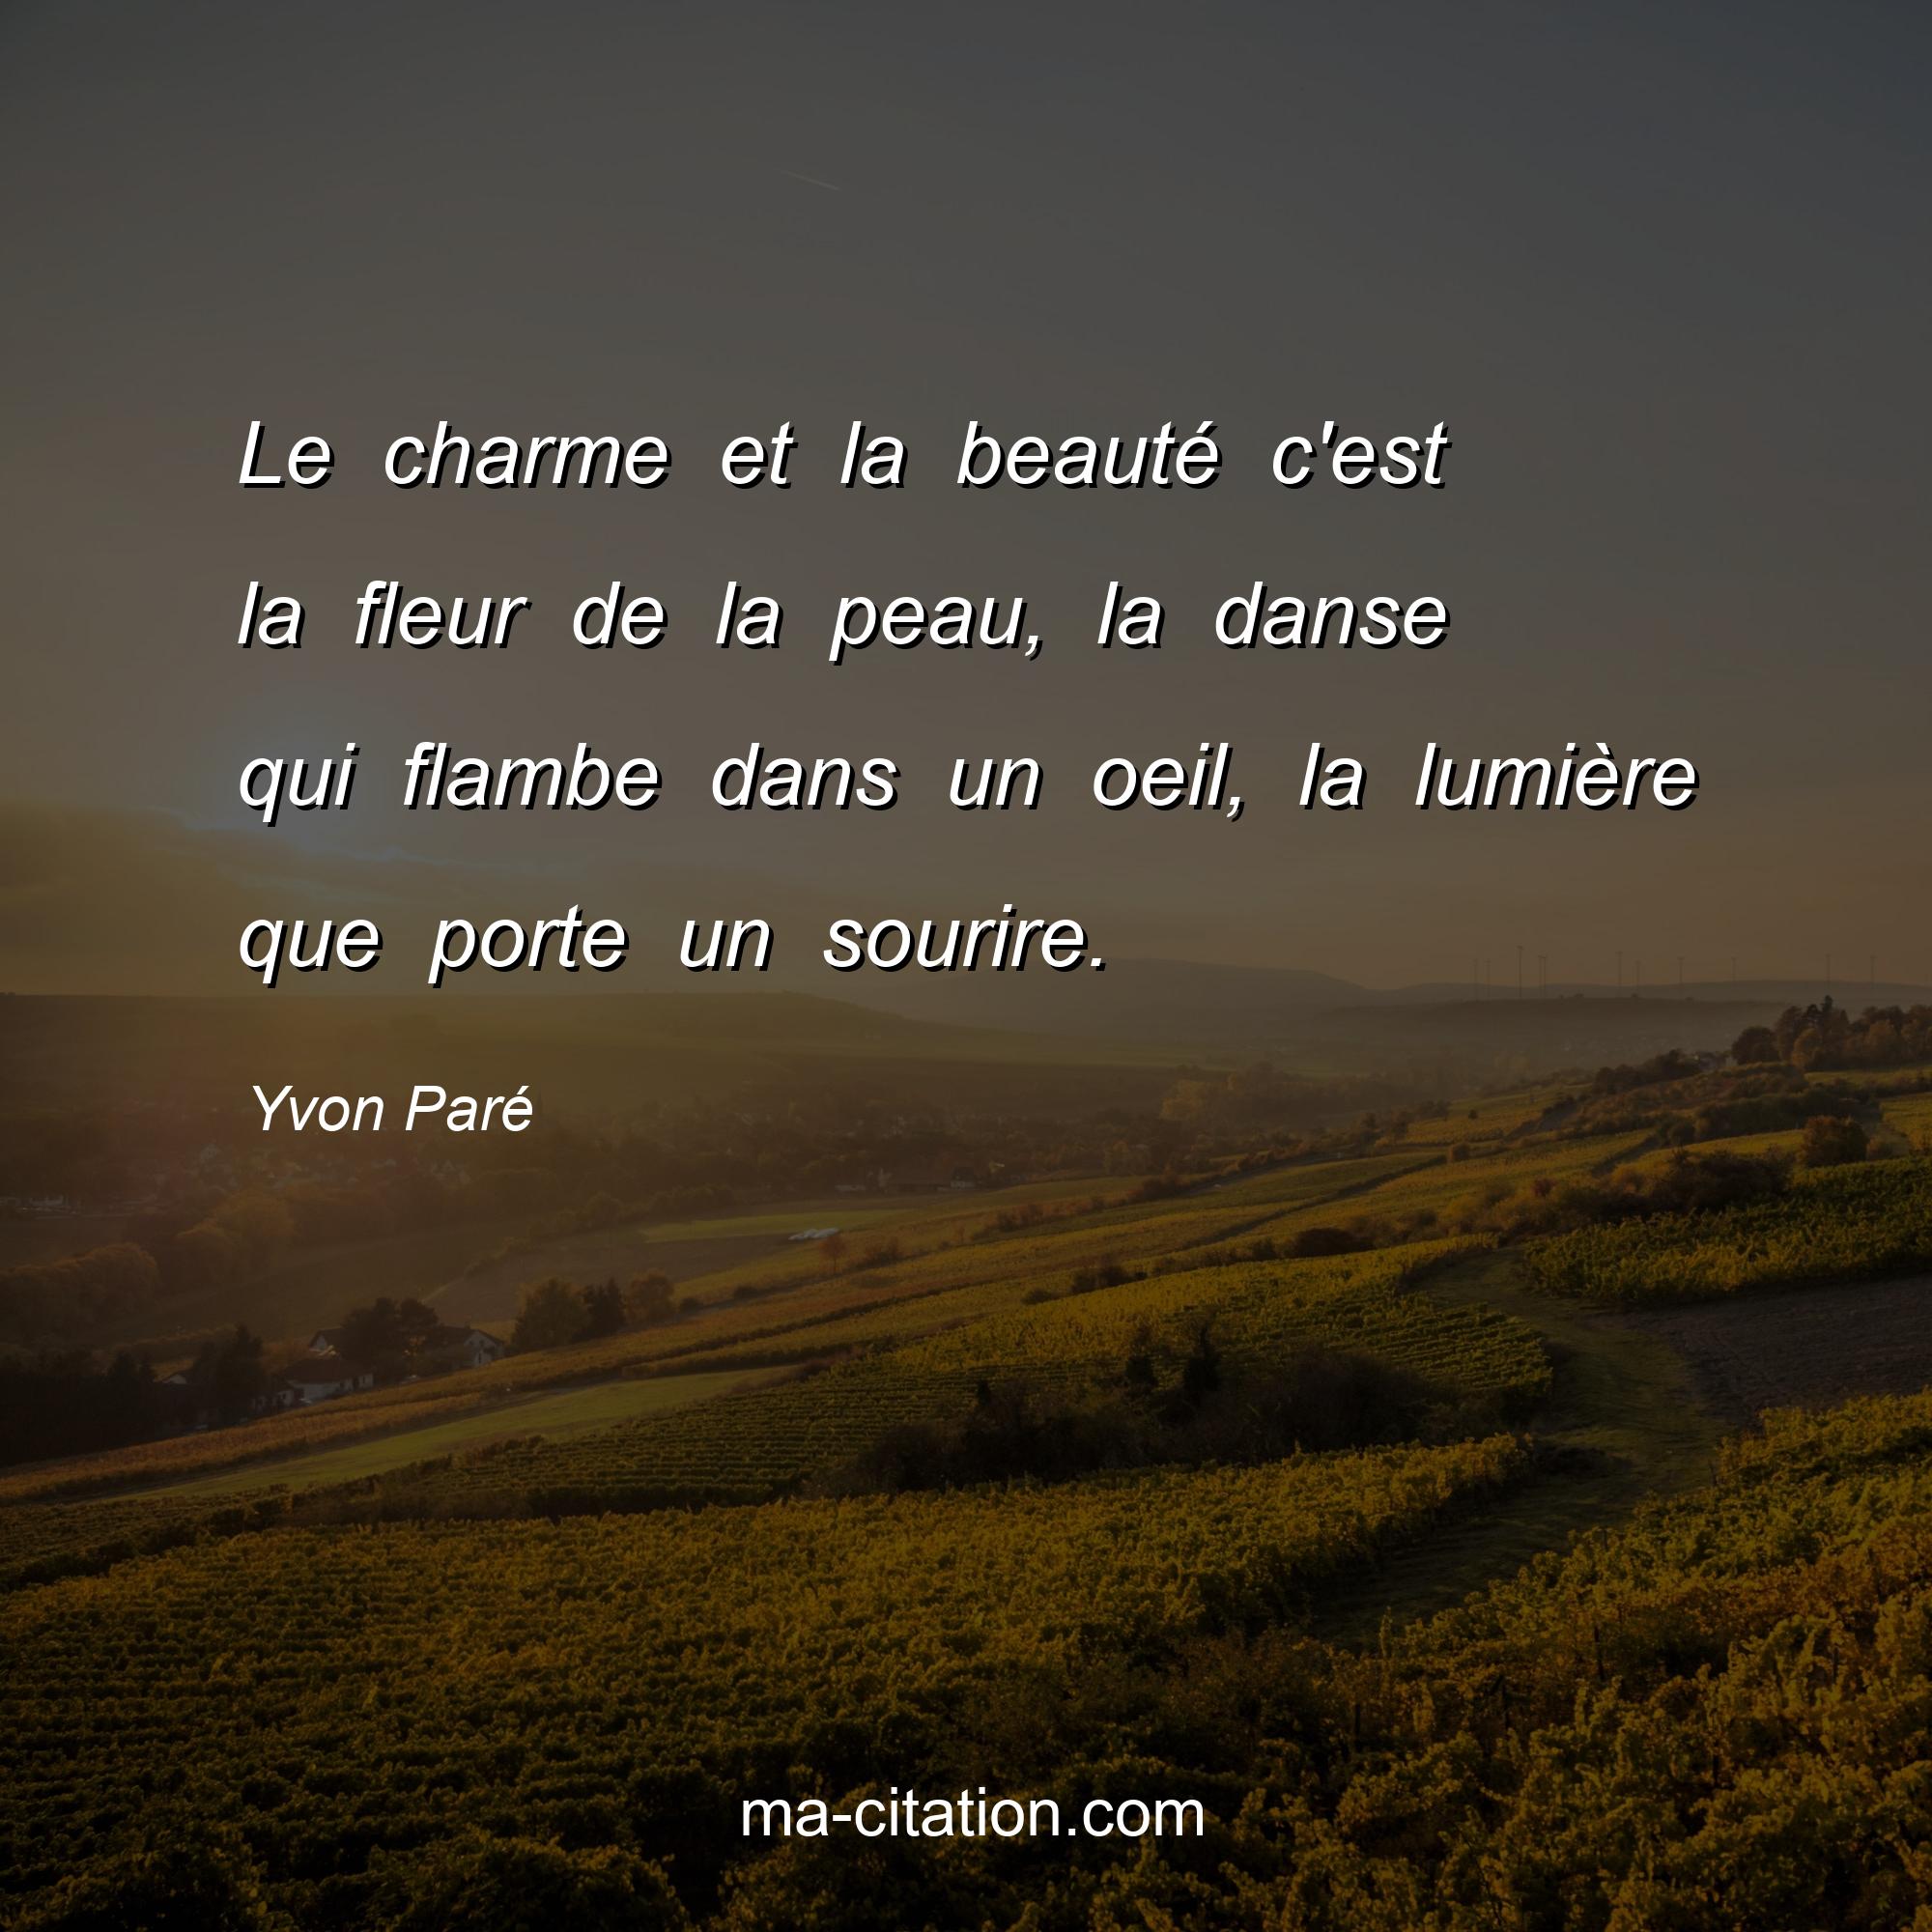 Yvon Paré : Le charme et la beauté c'est la fleur de la peau, la danse qui flambe dans un oeil, la lumière que porte un sourire.